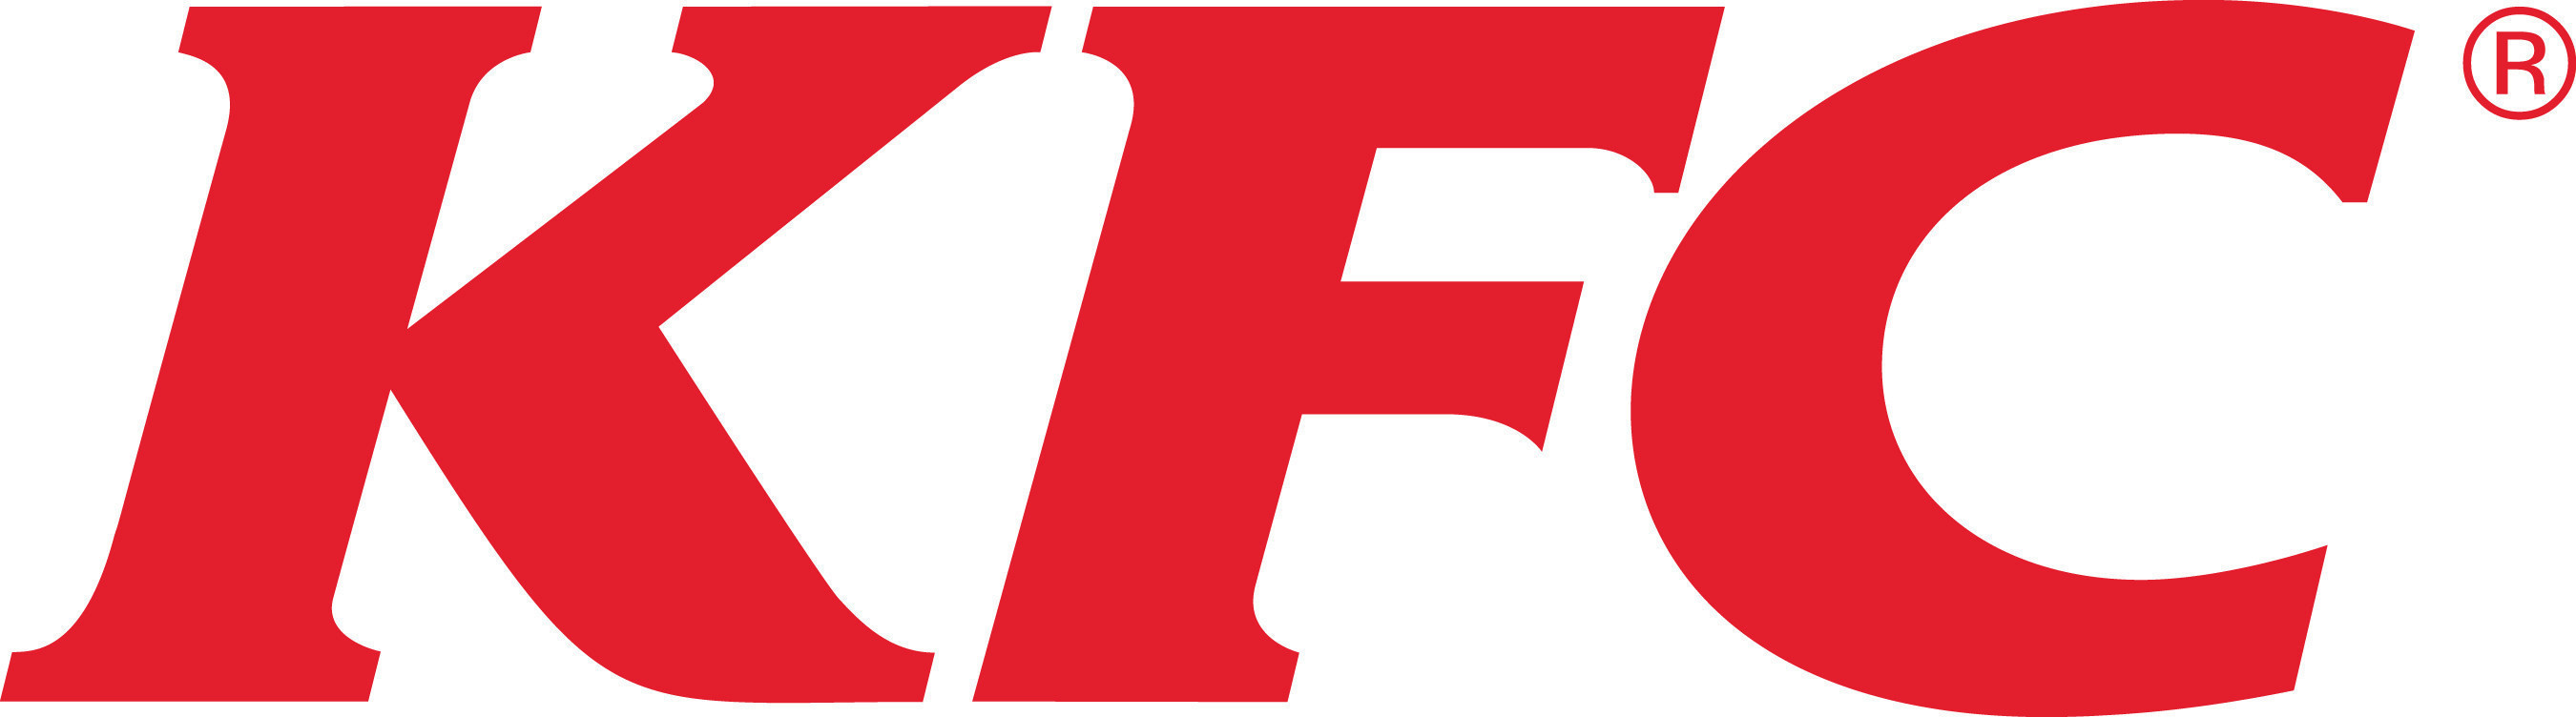 Detail Images Of Kfc Logo Nomer 11